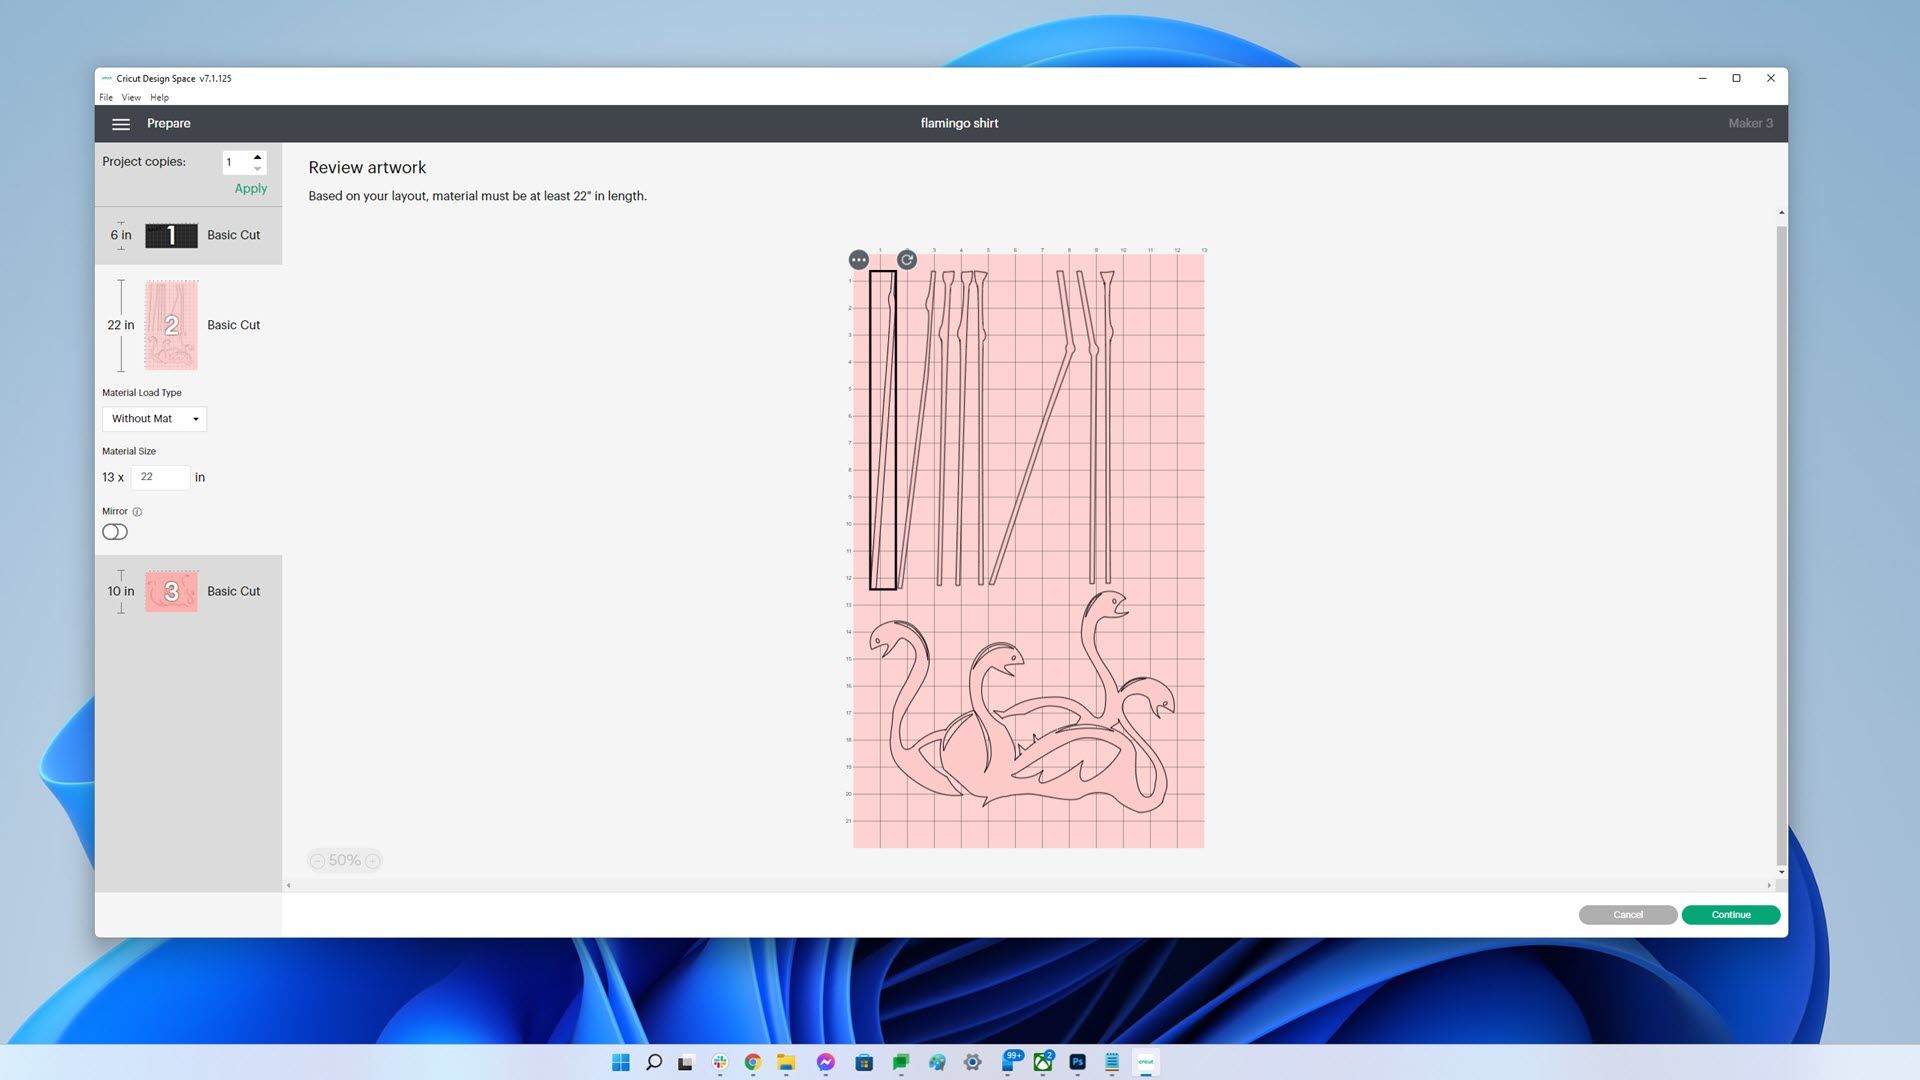 A screenshot of the Cricut design software